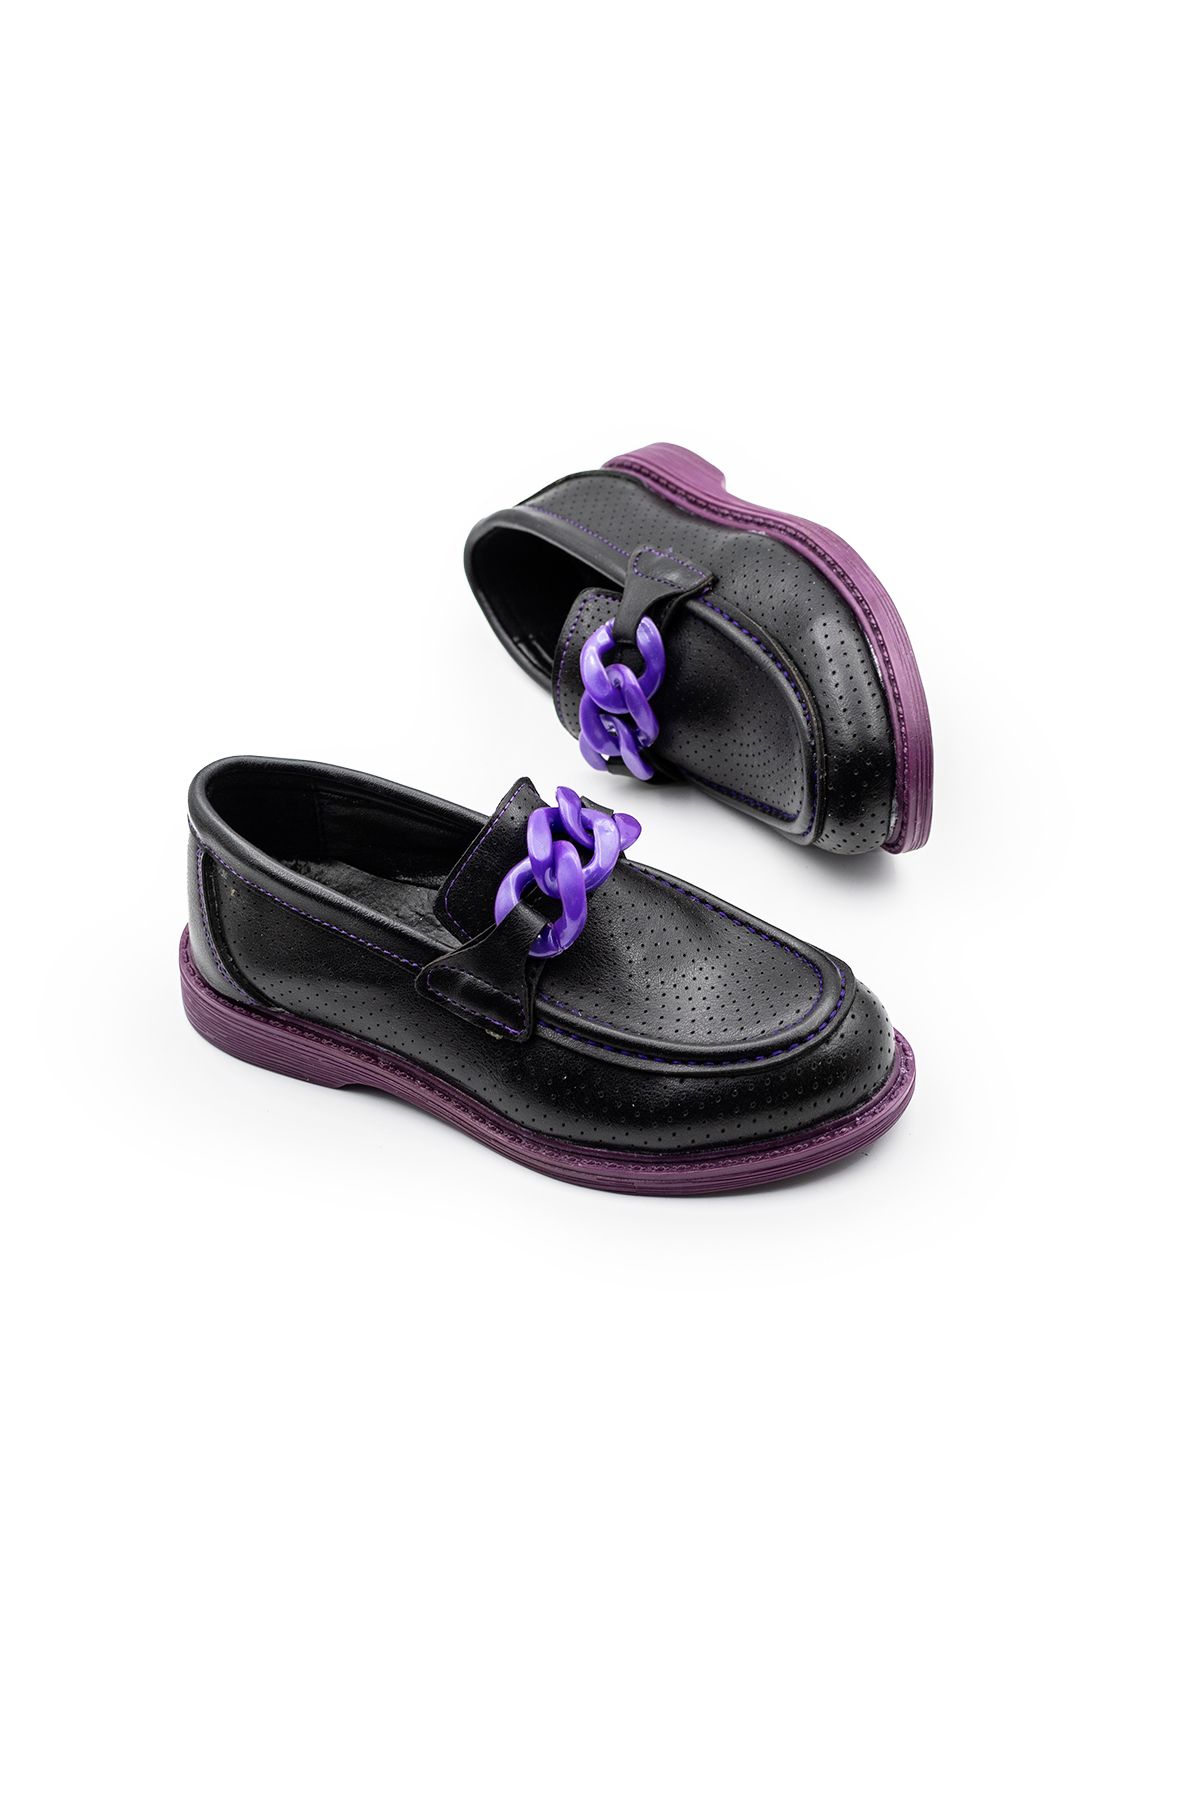 Brono Ayakkabı Kız Çocuk Hafif Tabanlı Günlük Klasik Ayakkabı 1204-4